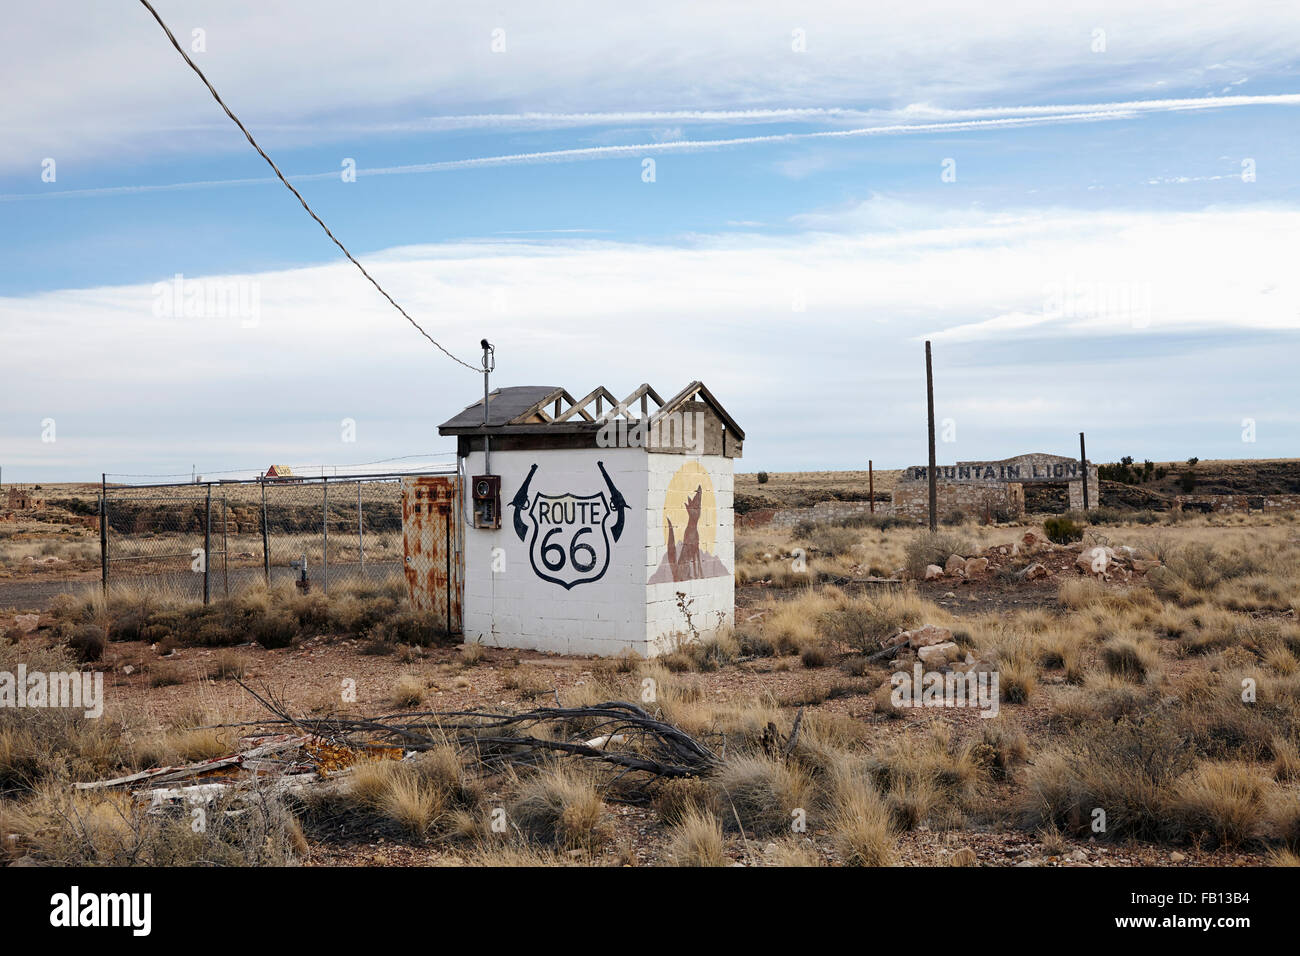 Estructura construida abandonados en el desierto Foto de stock